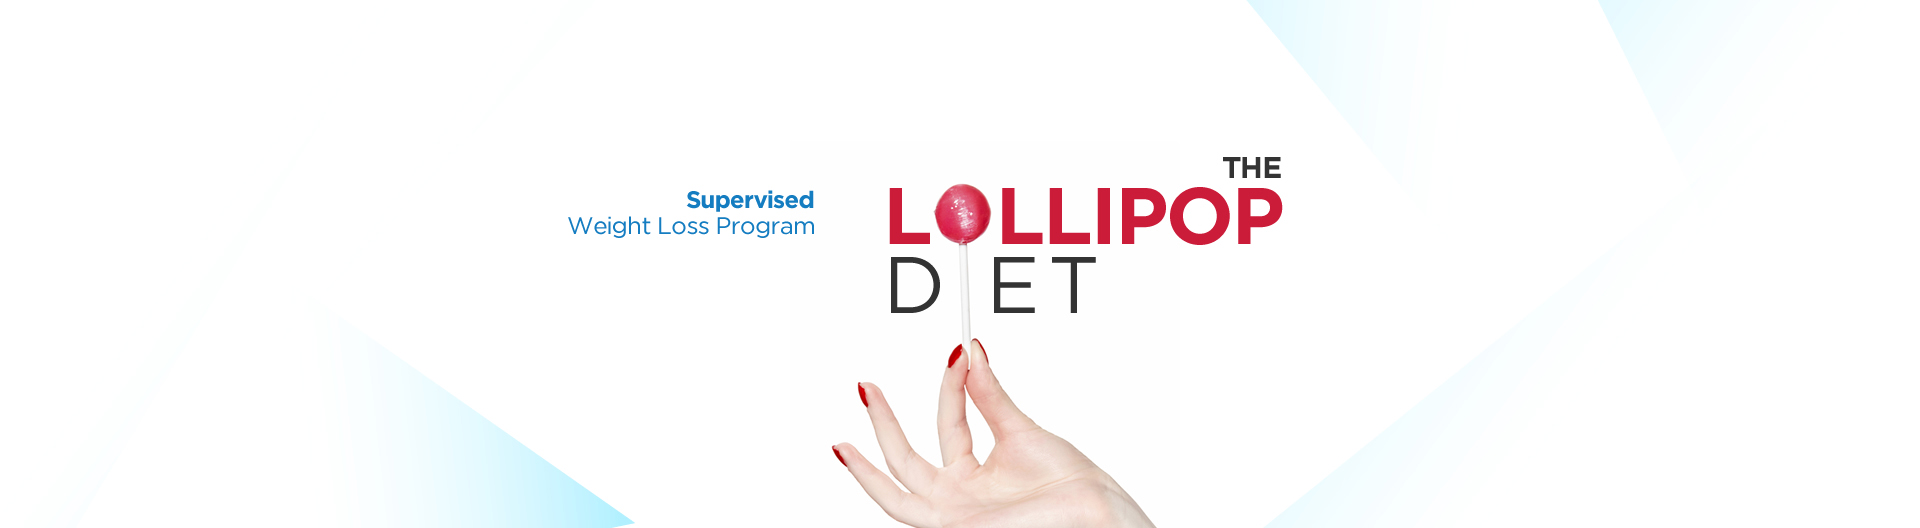 the weight loss lollipop diet